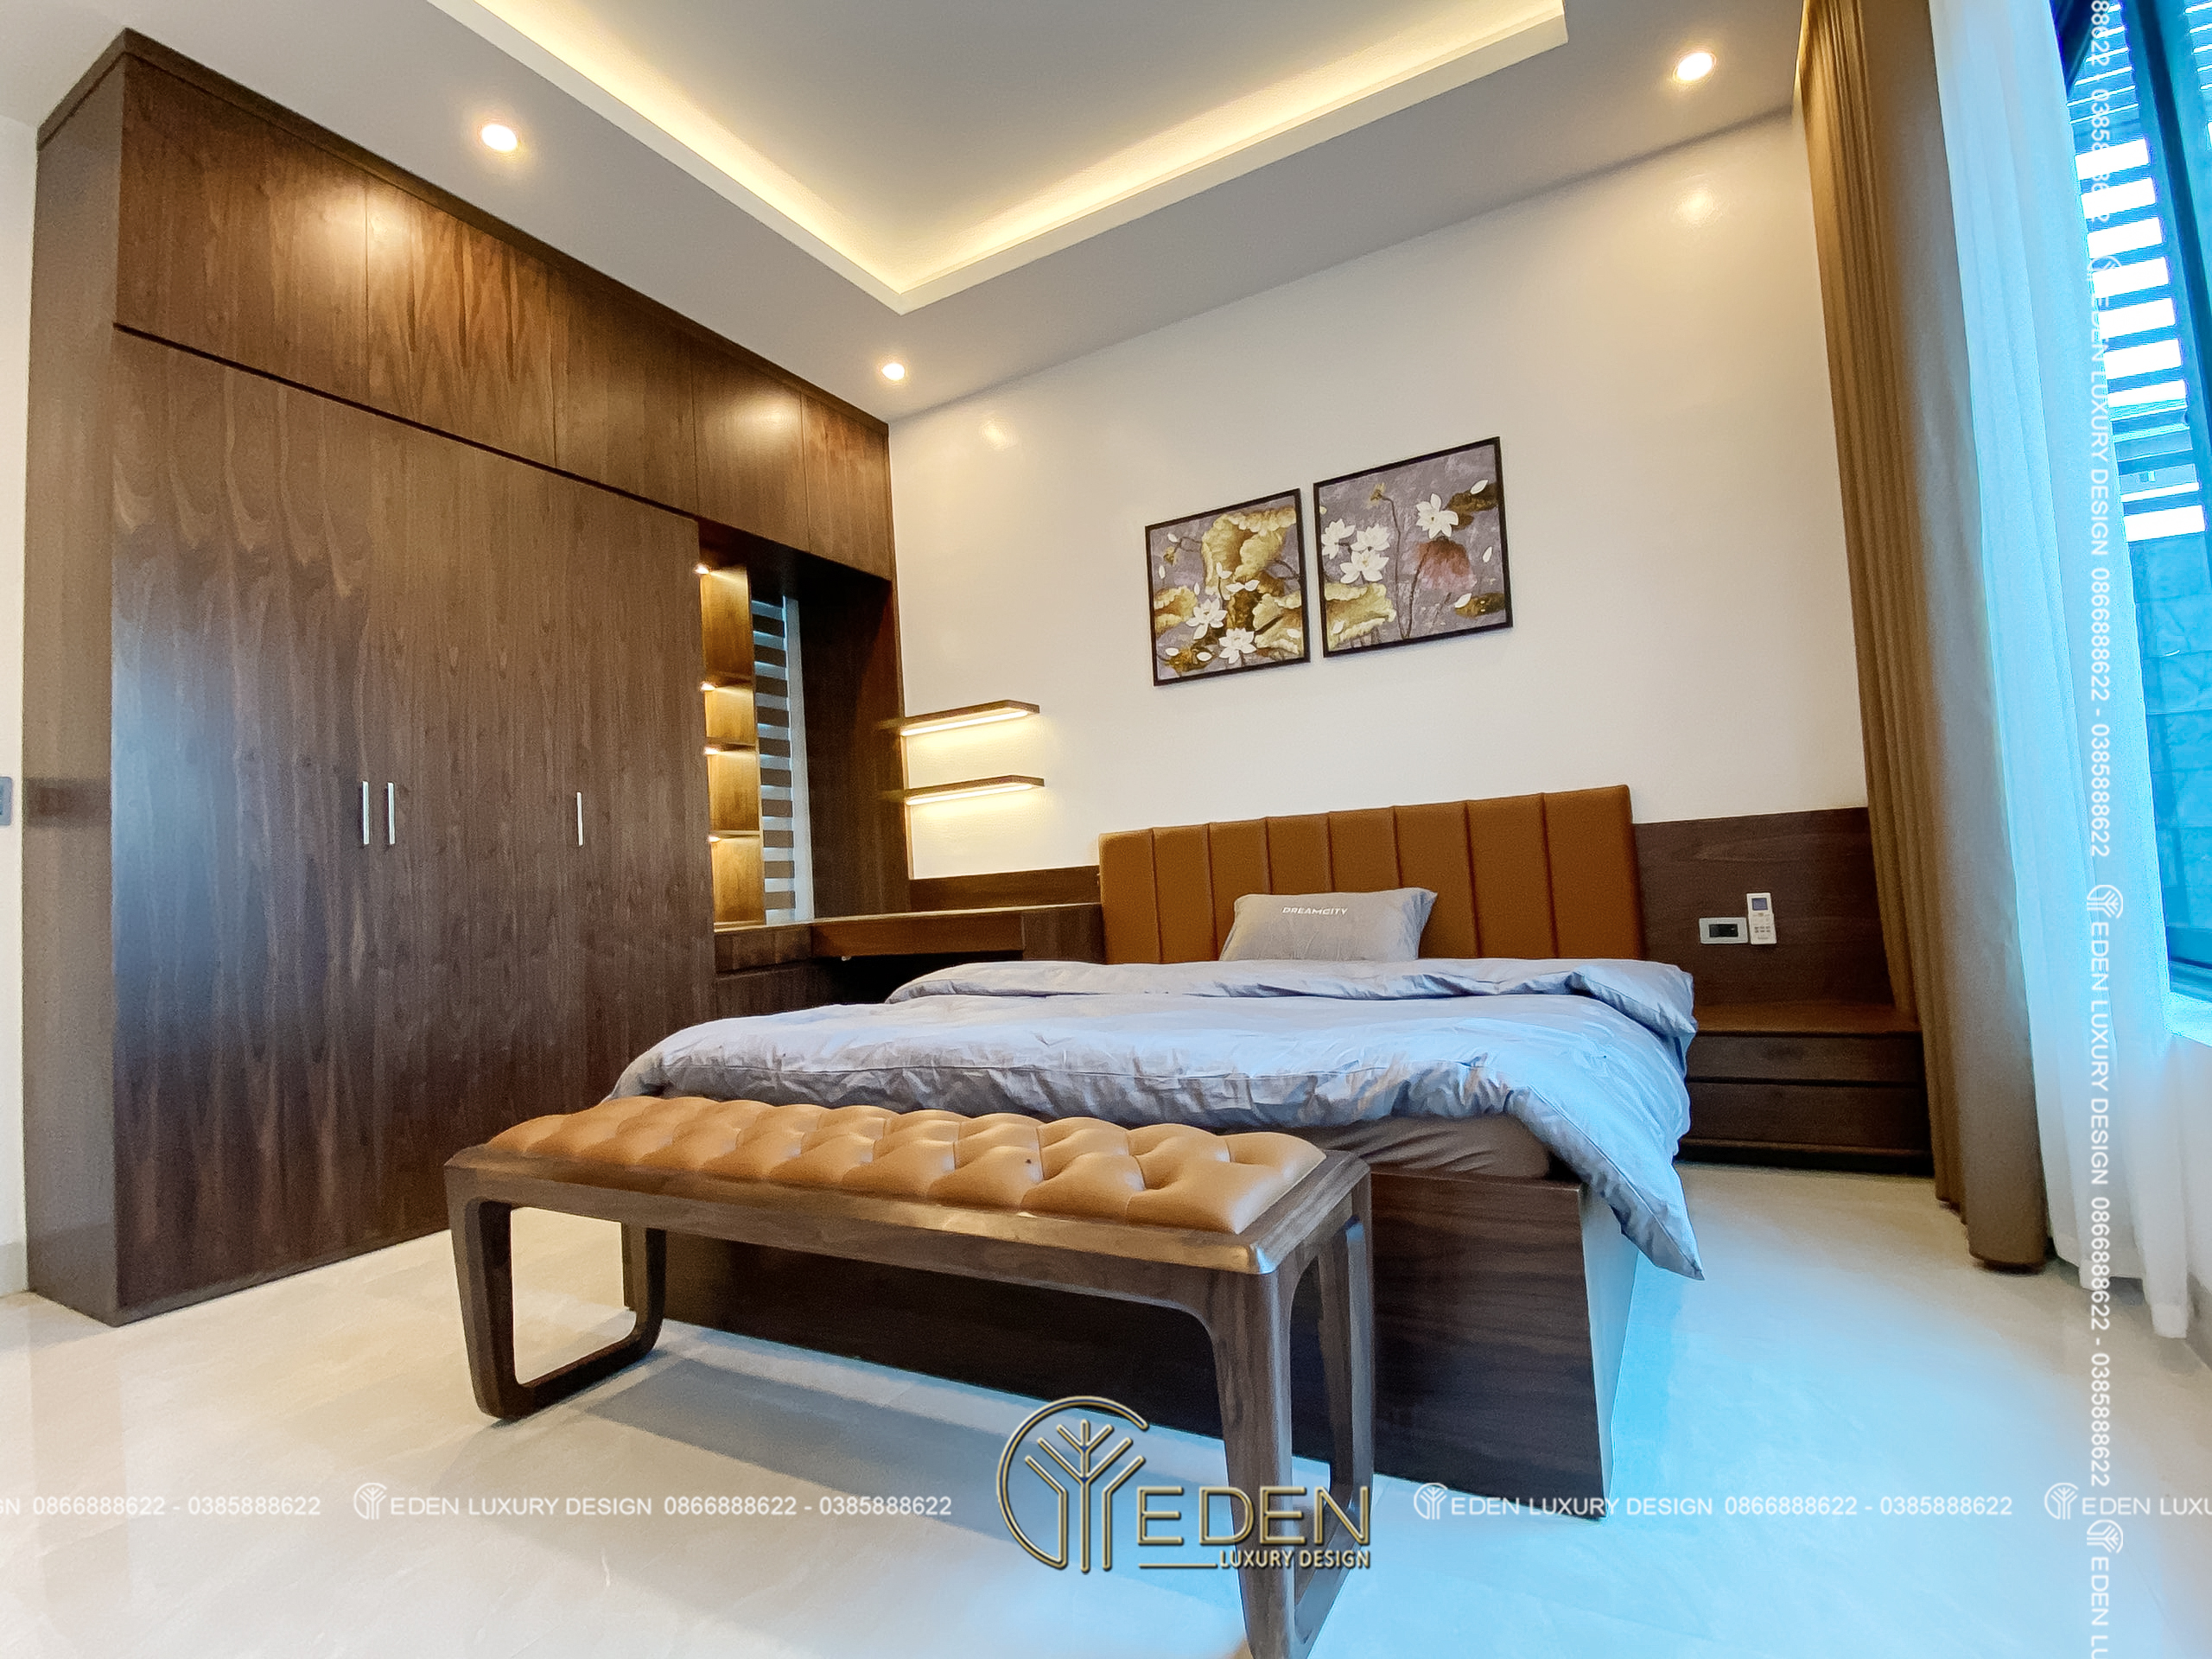 Thiết kế phòng ngủ đơn giản, tiện nghi dành cho ông bà và khách.